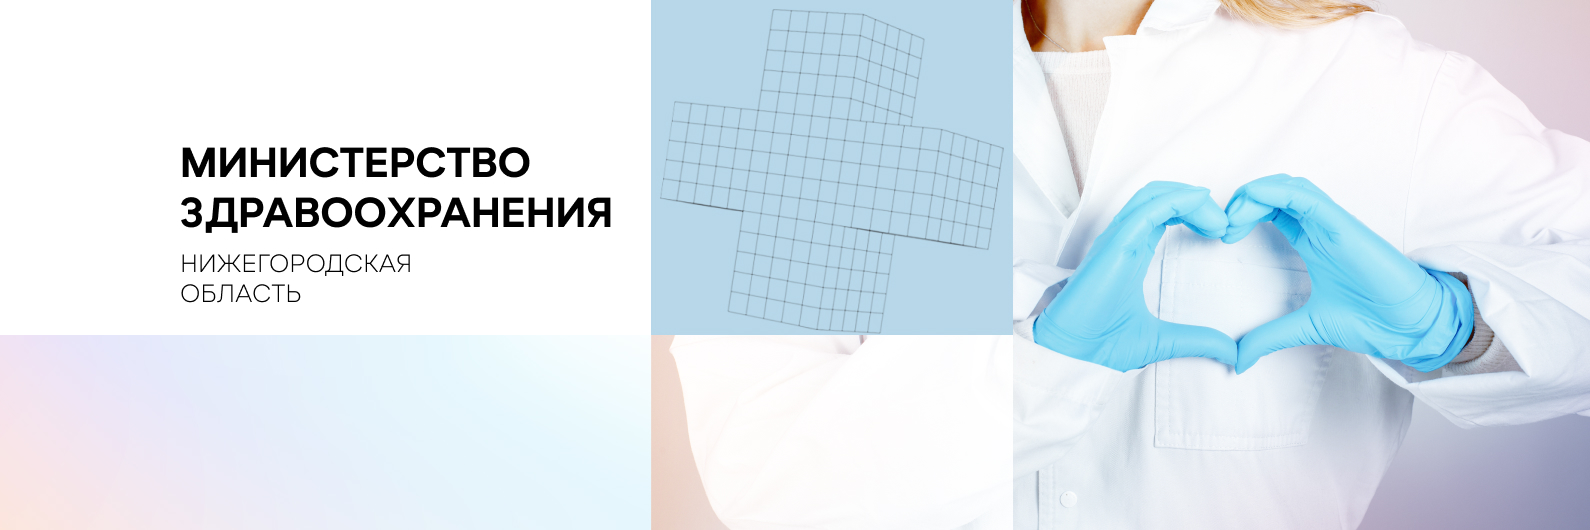 386 рентген-исследований провели в Балахнинской ЦРБ благодаря приобретению оборудования по нацпроекту «Здравоохранение»